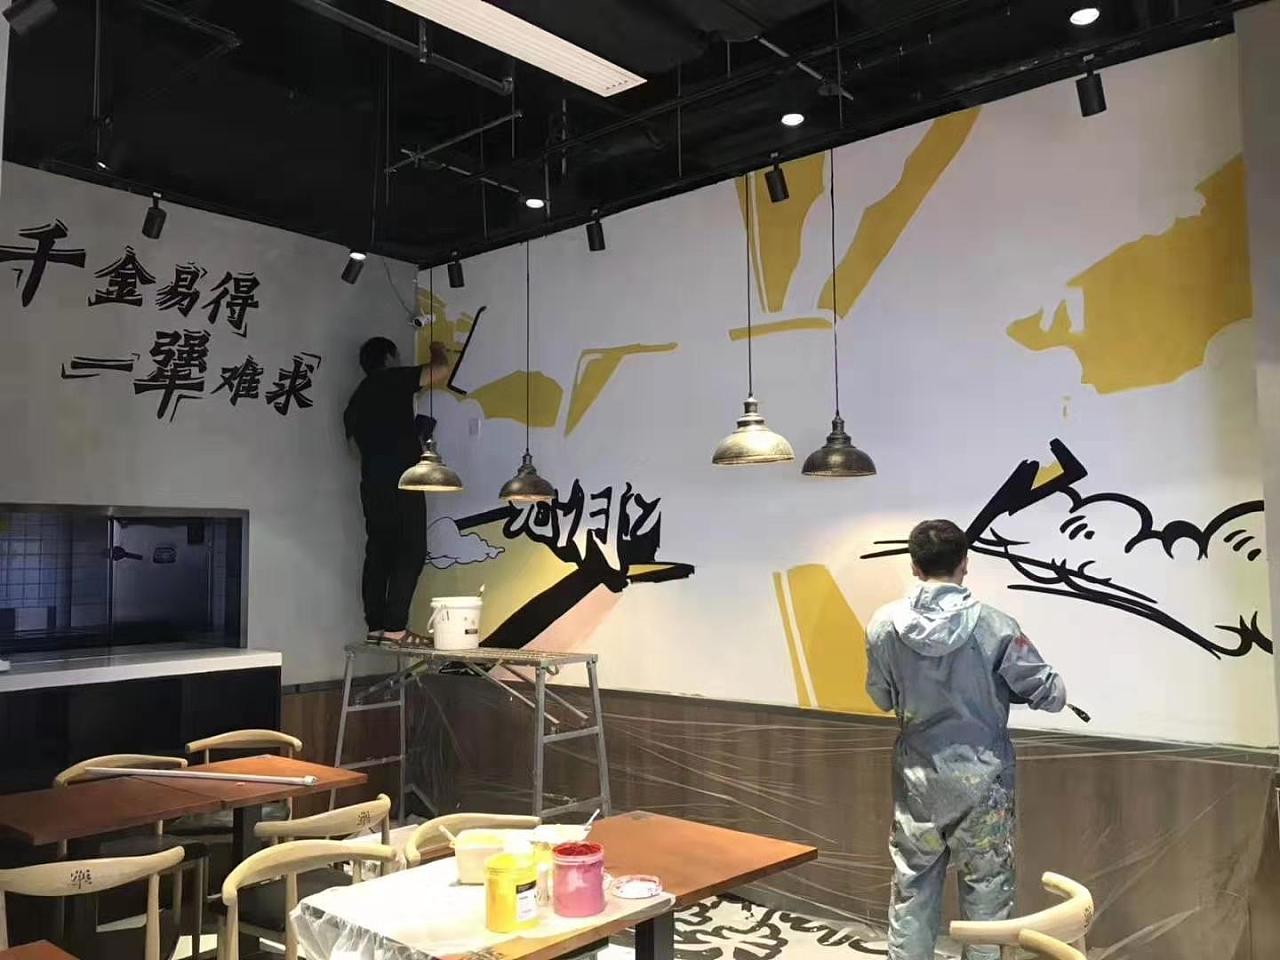 南京墙绘面馆涂鸦手绘餐厅墙体彩绘11